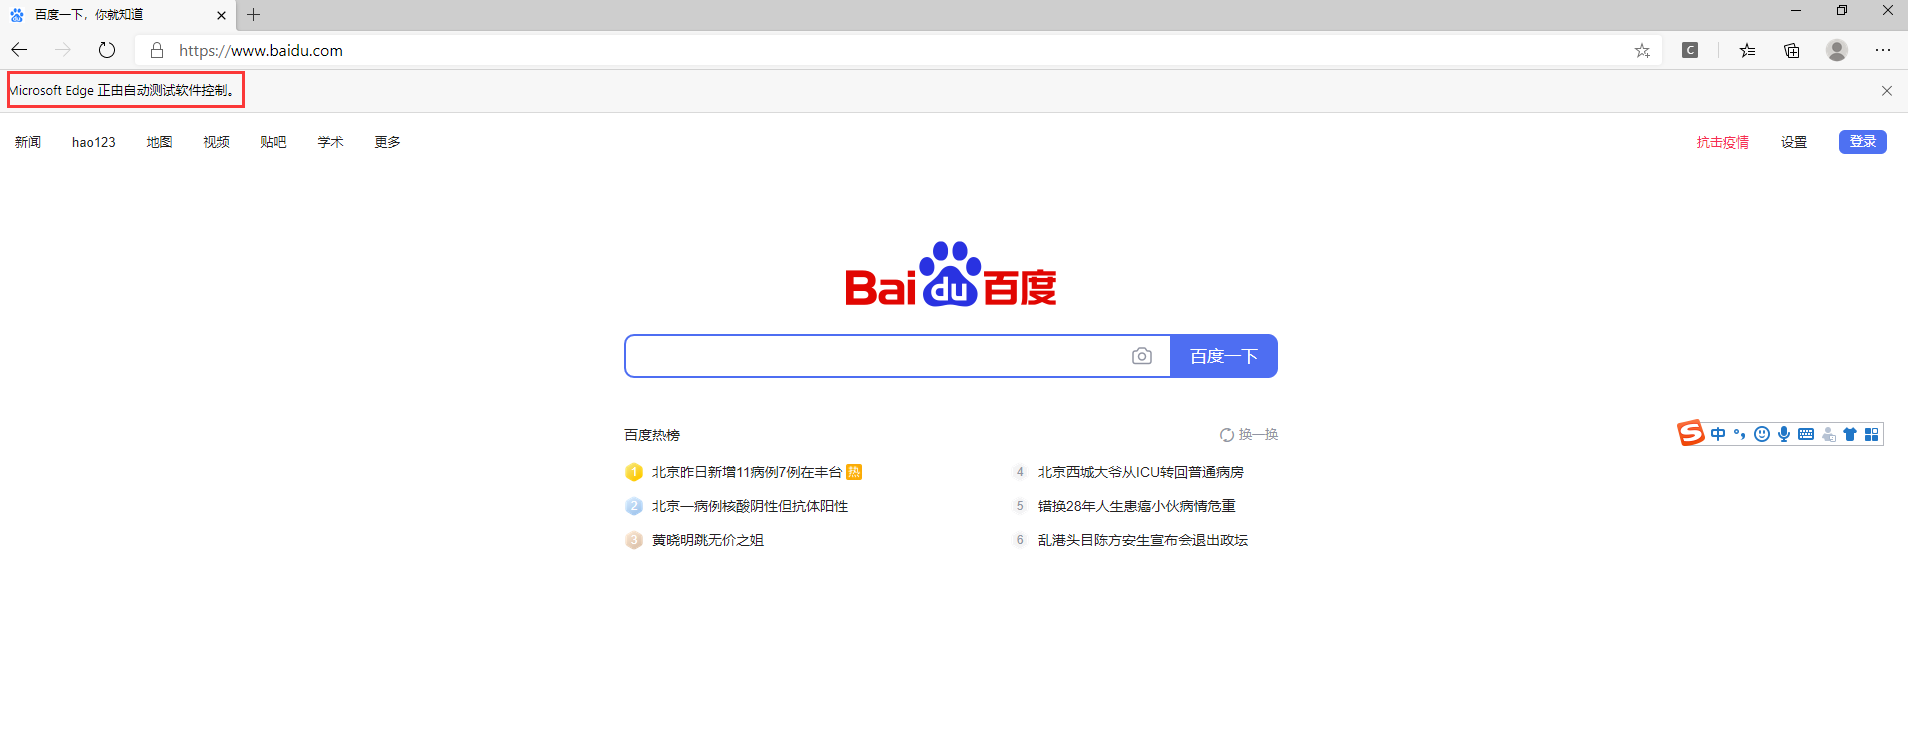 Baidu поисковая. Baidu Поисковая система. Китайский Поисковик. Байду китайский Поисковик. Поисковая система Китая baidu.